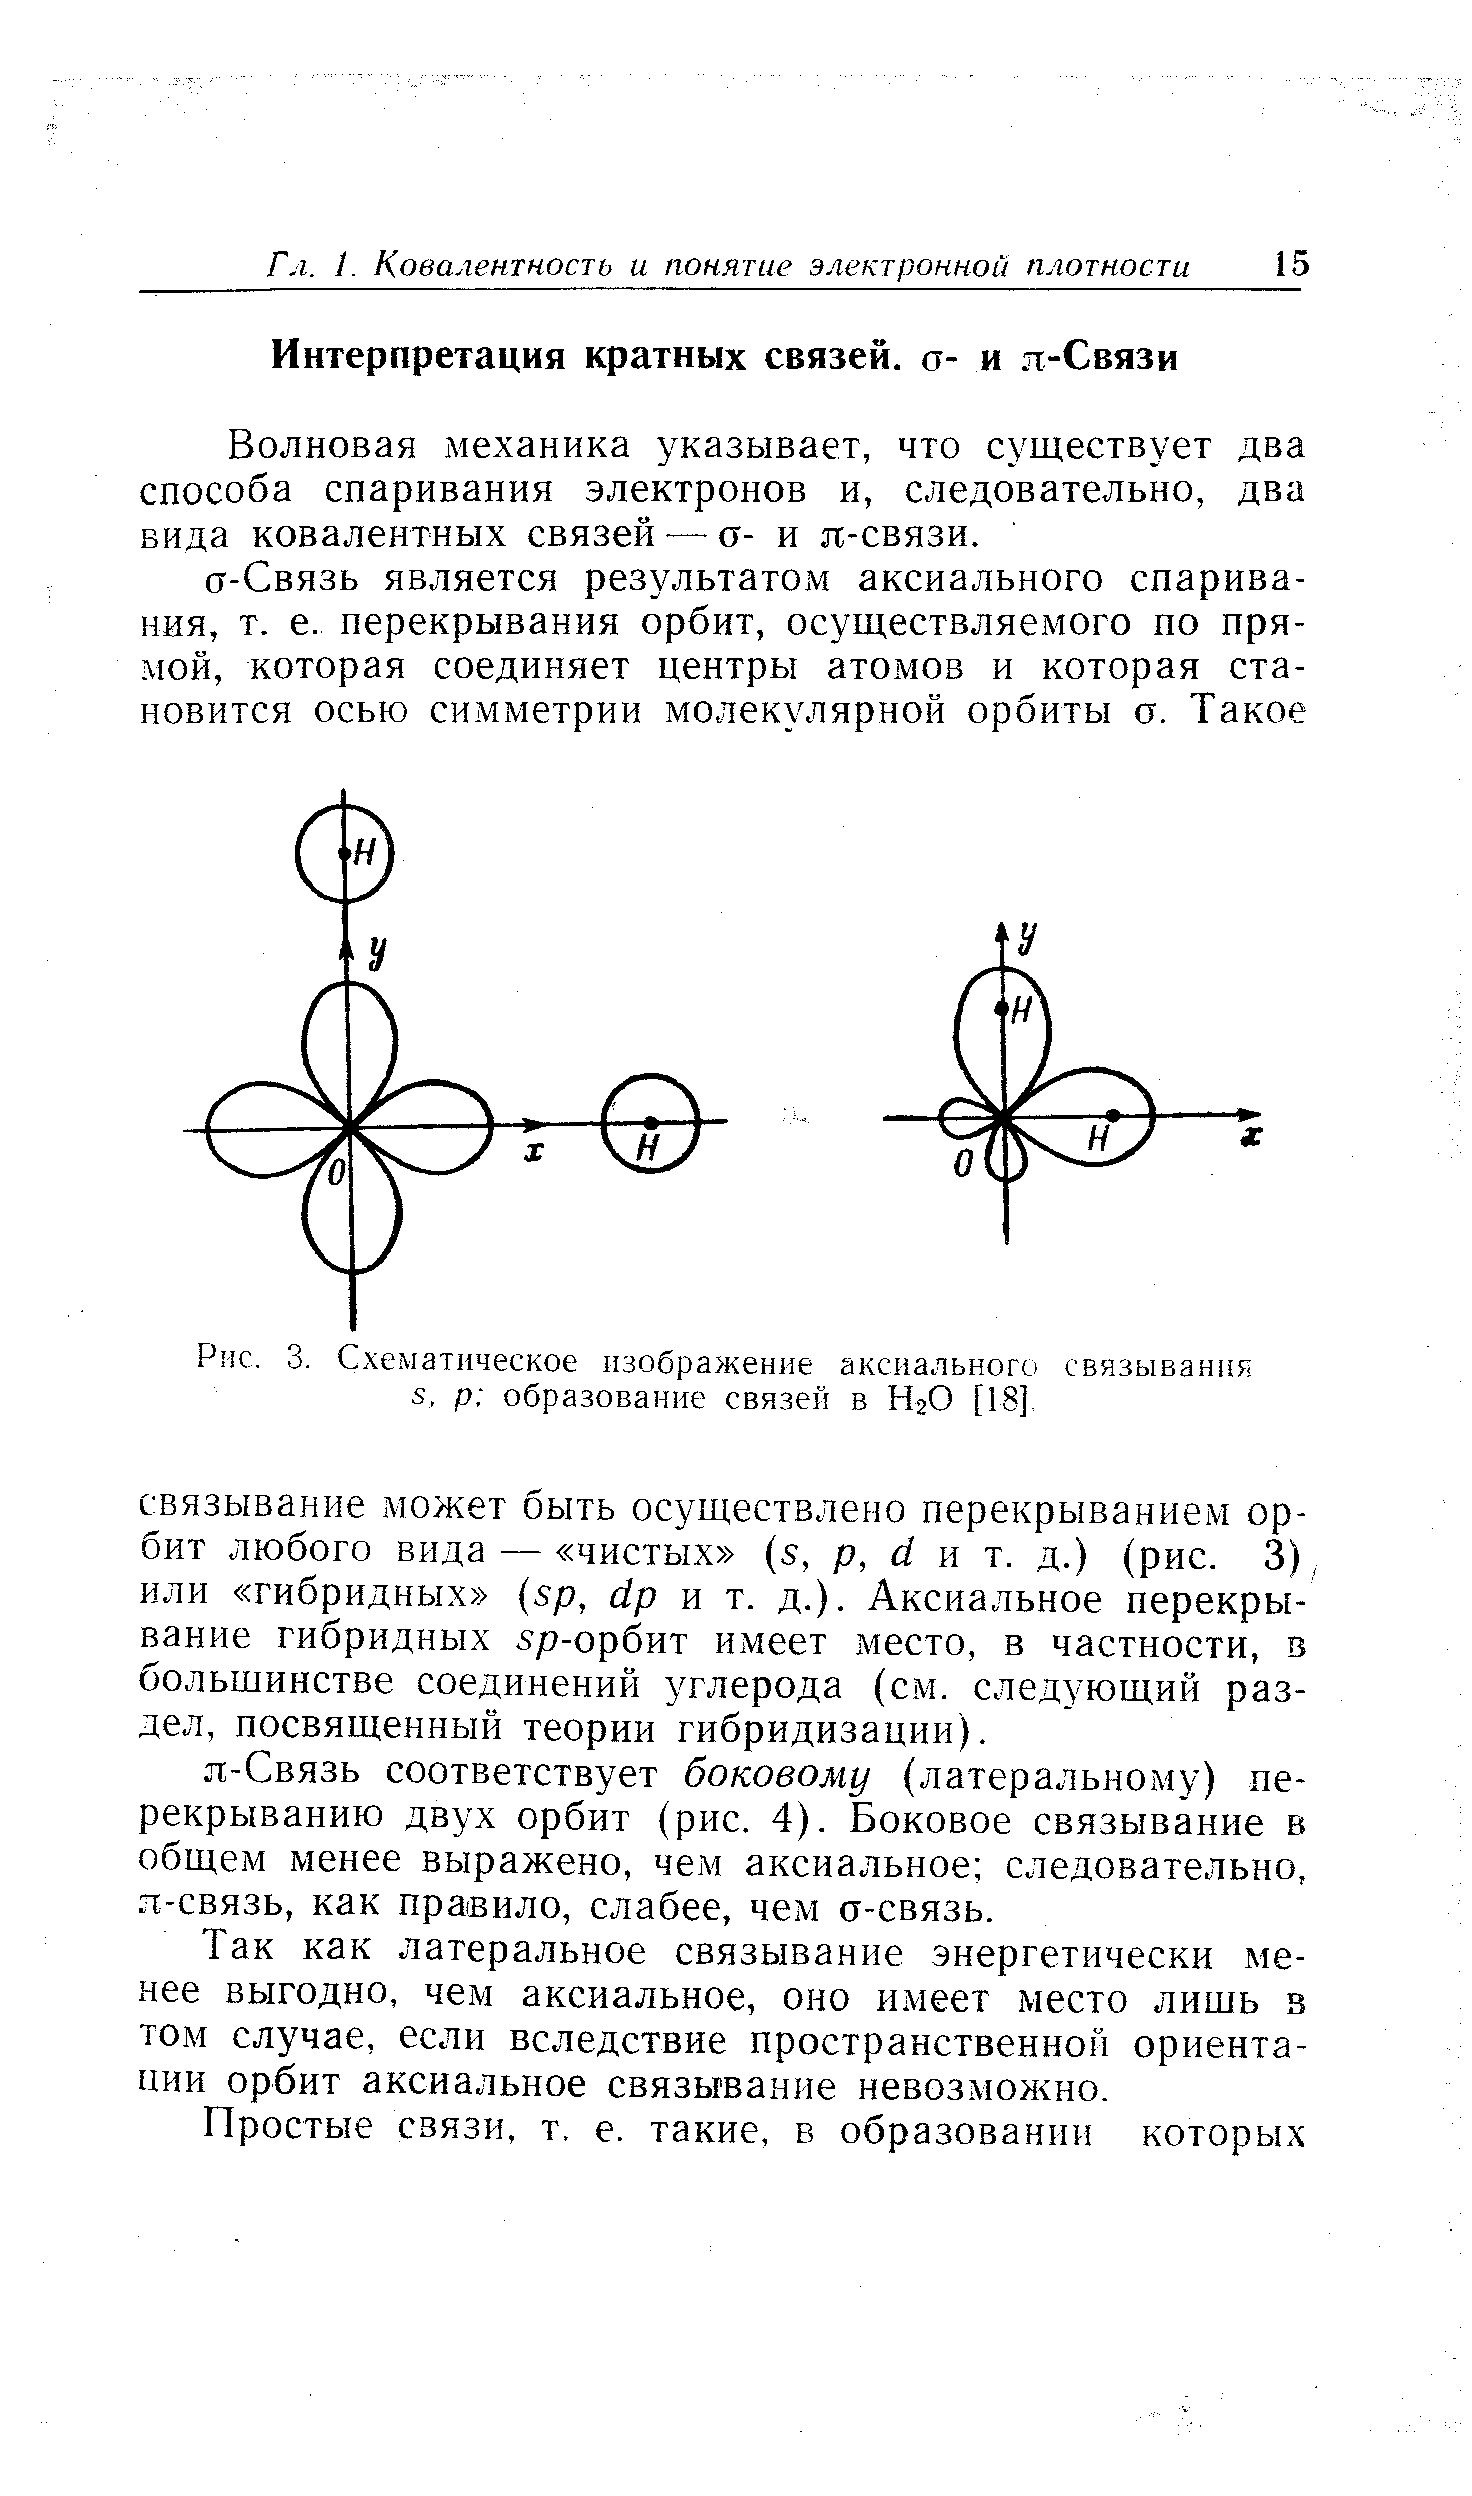 Волновая механика указывает, что существует два способа спаривания электронов и, следовательно, два вида ковалентных связей — а- и я-связи.